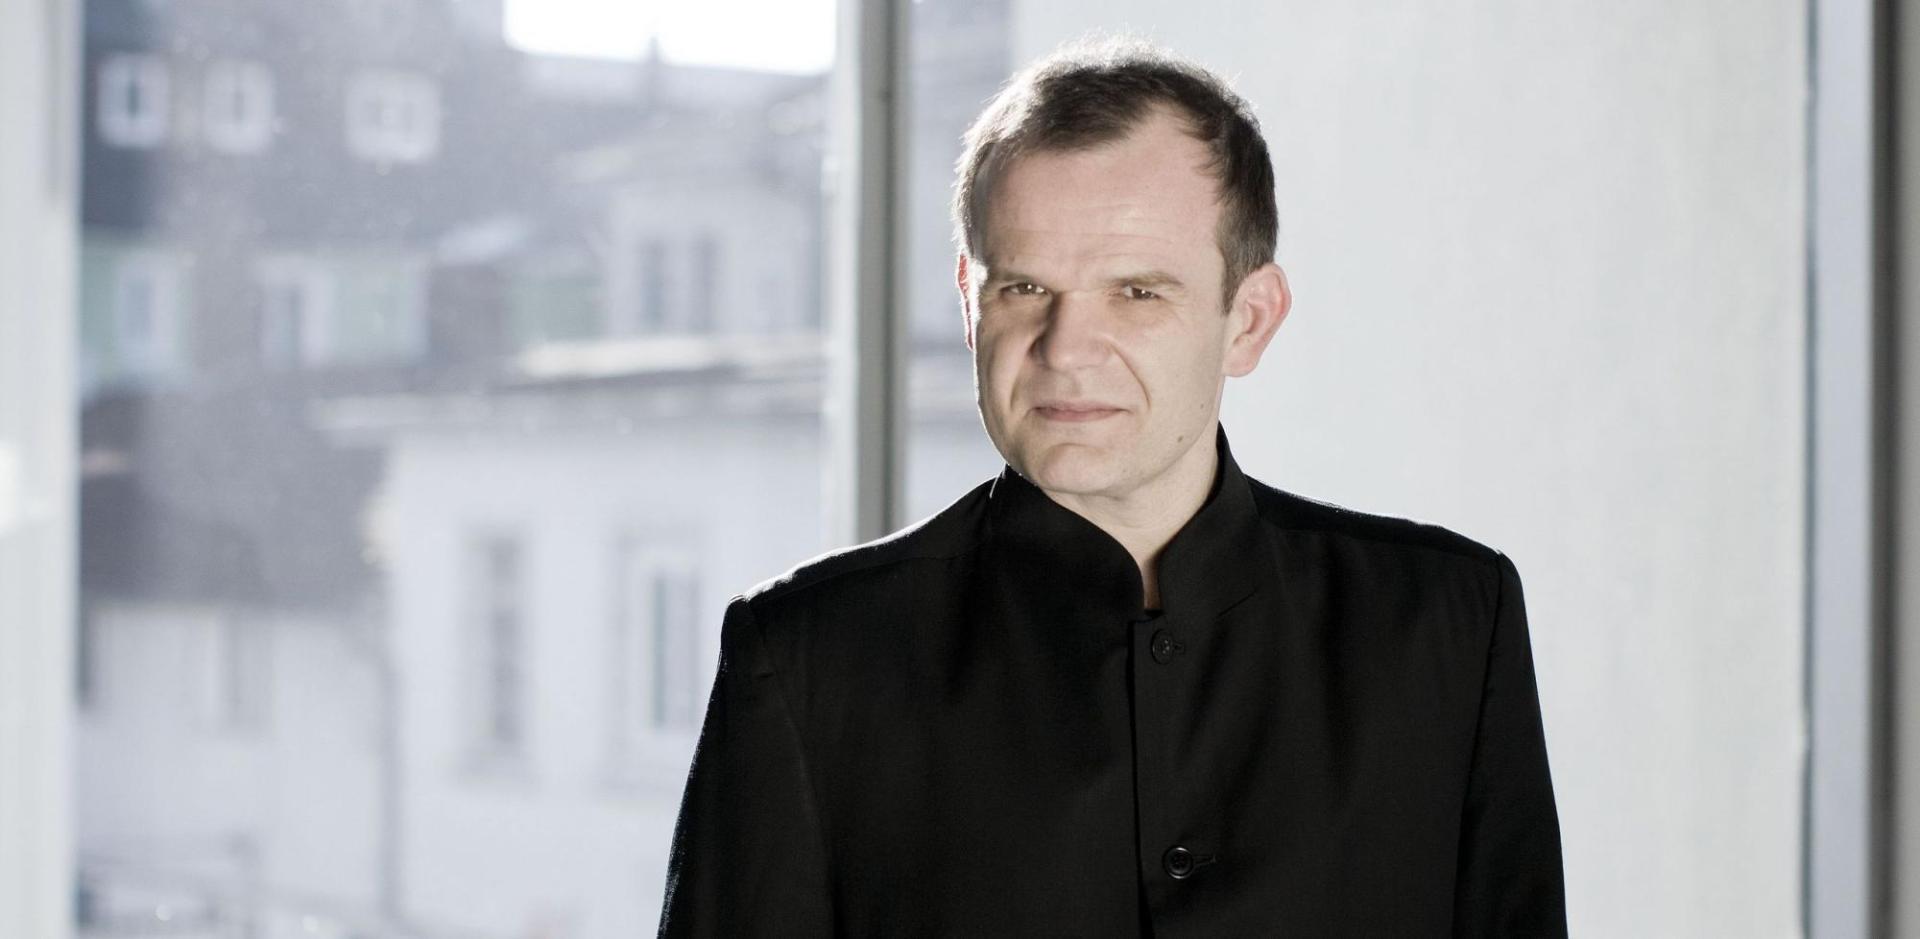 Der berühmte Dirigent François-Xavier Roth in einem schwarzen Hemd